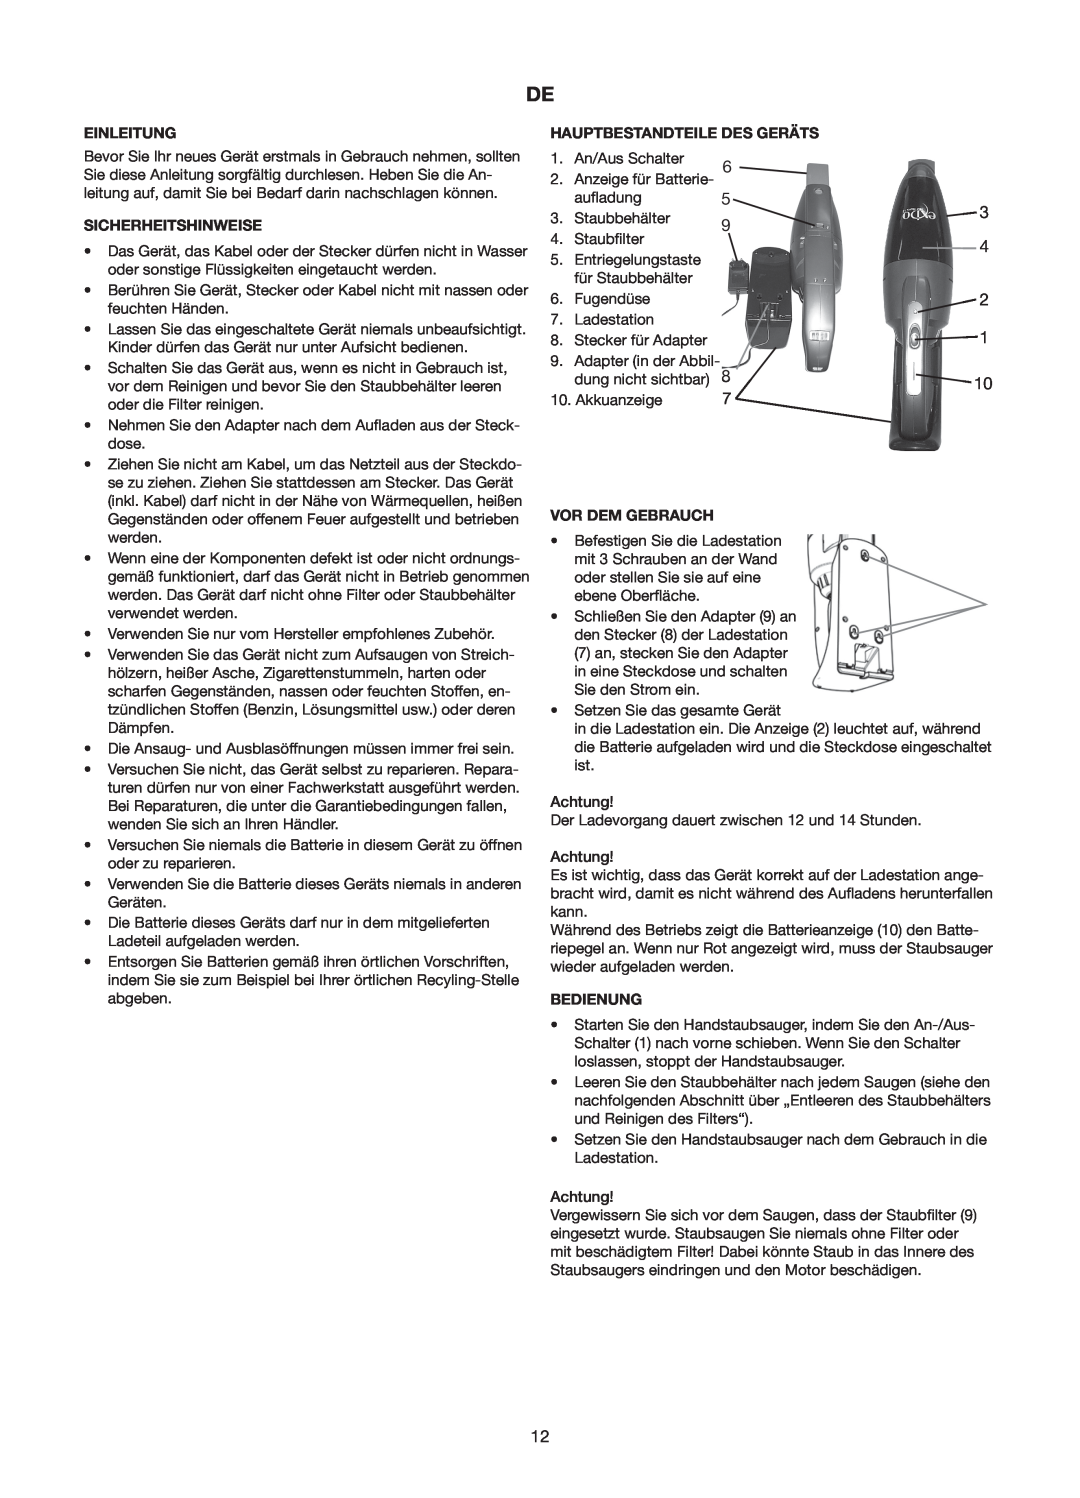 Melissa 240-112/113 manual Einleitung, Sicherheitshinweise, Hauptbestandteile Des Geräts 